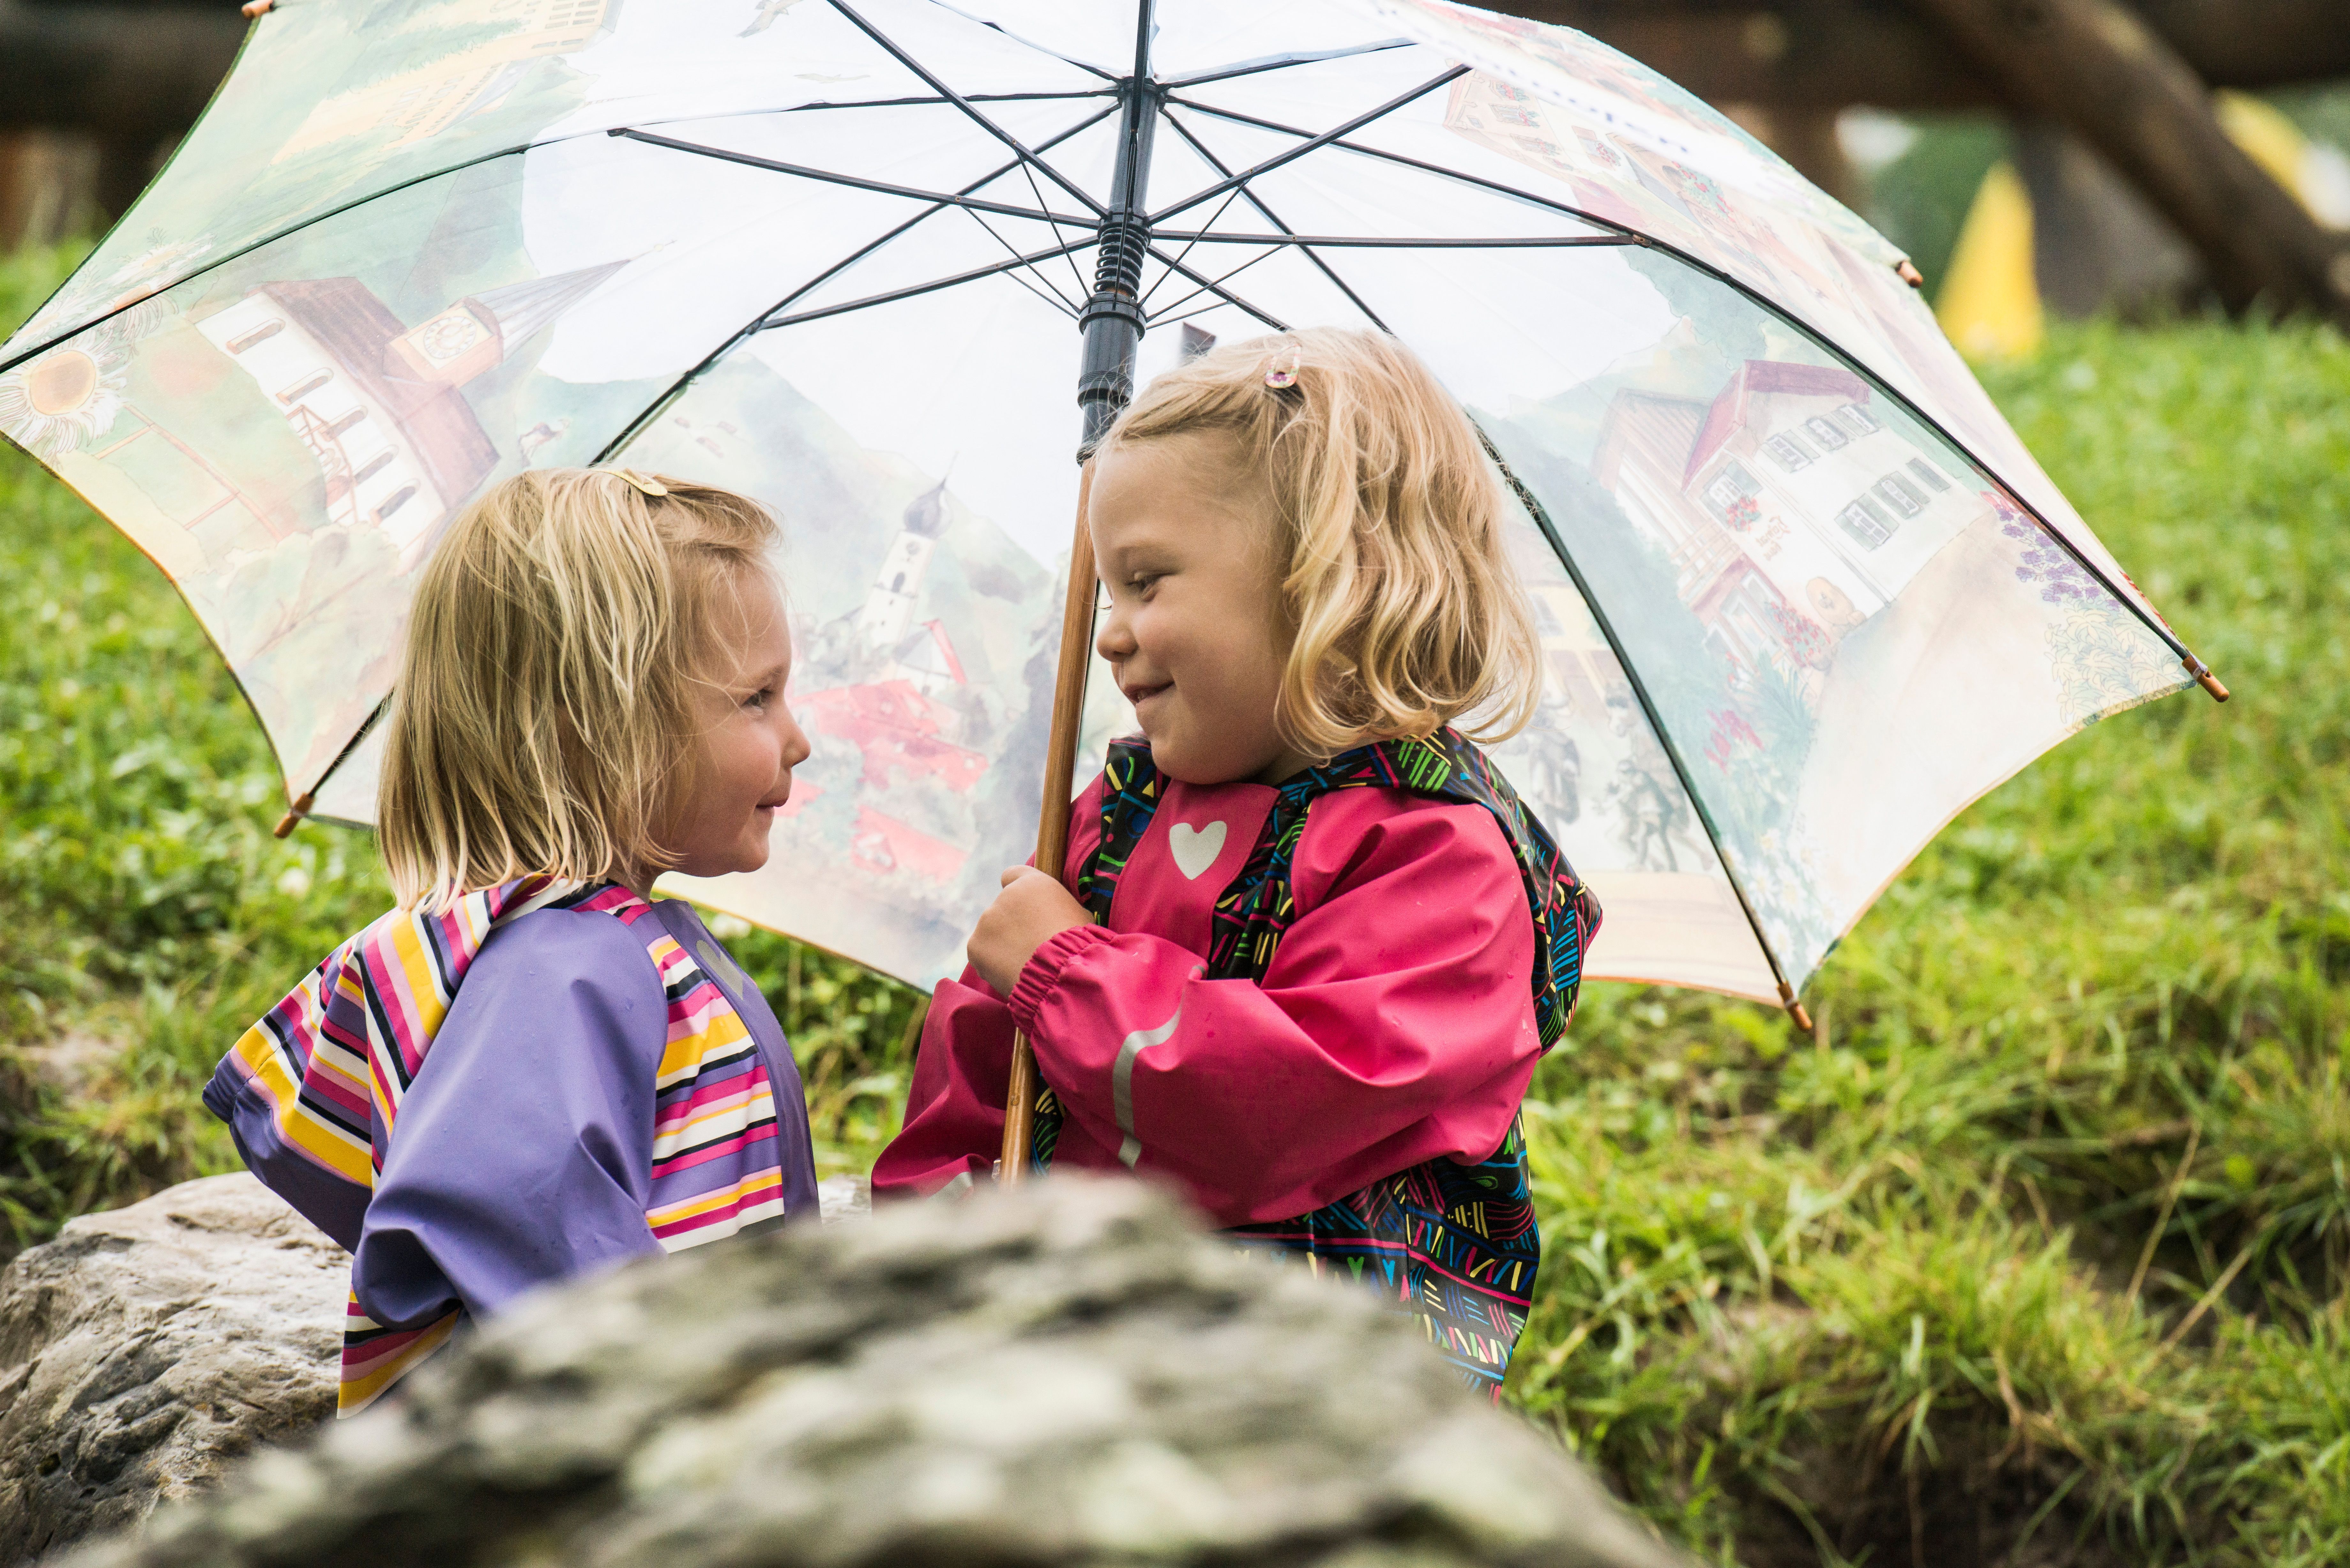 Zwei Mädchen spielen im Regen und stehen lachend unter einem Schirm.